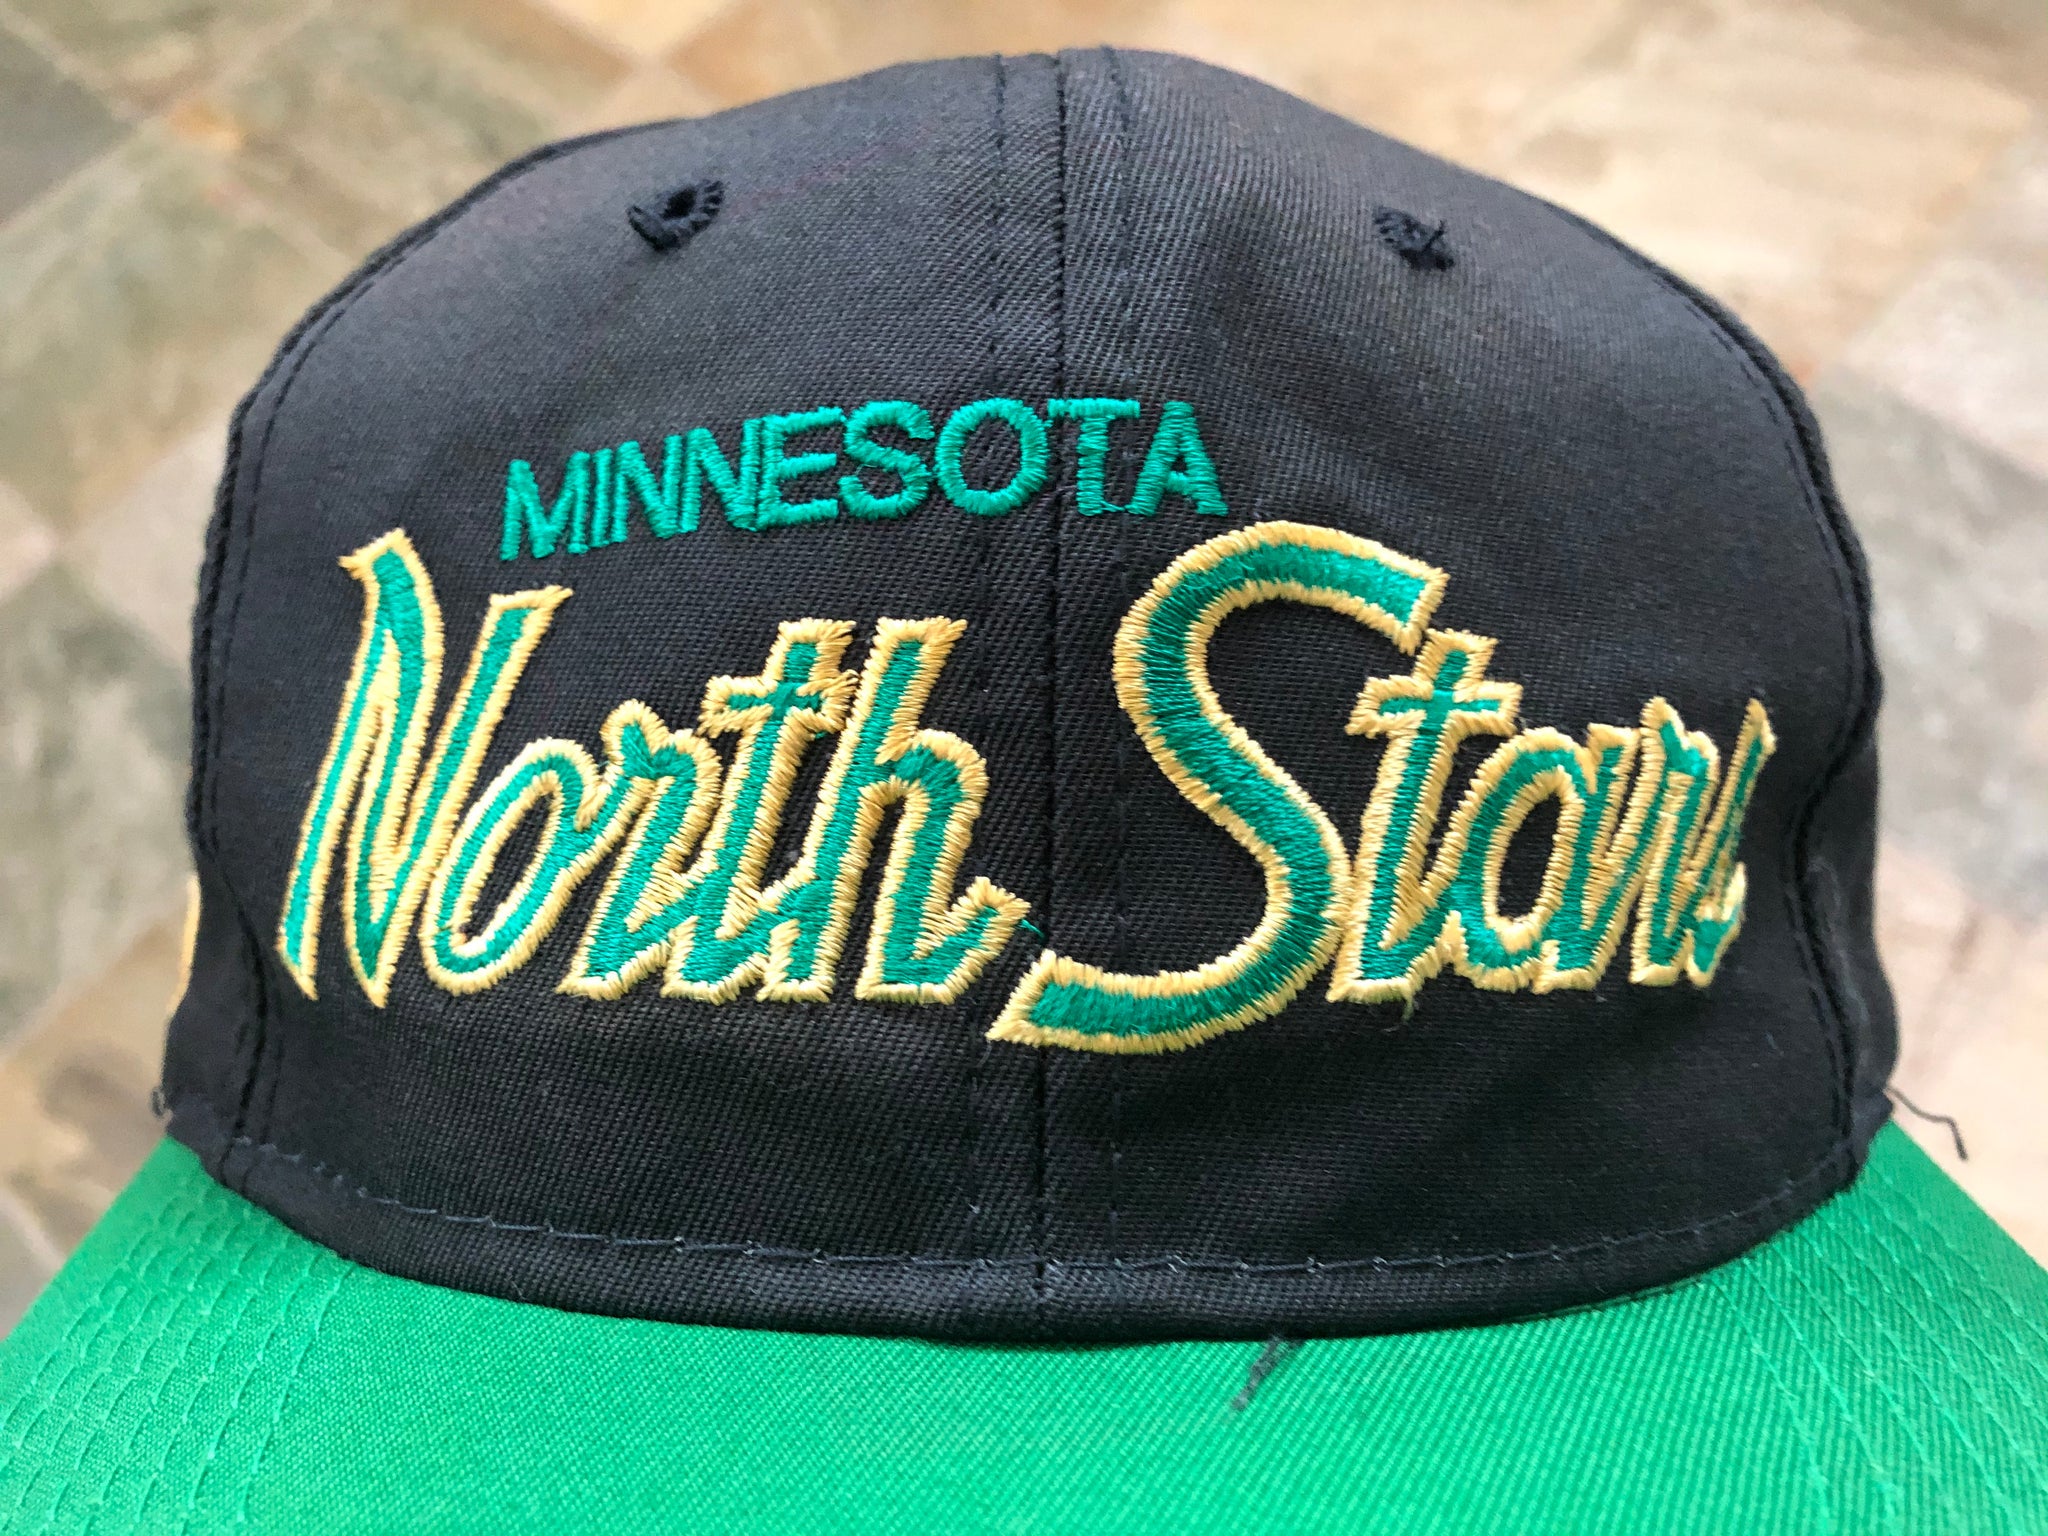 MINNESOTA NORTH STARS VINTAGE 1990'S THE GAME SNAPBACK ADULT HAT